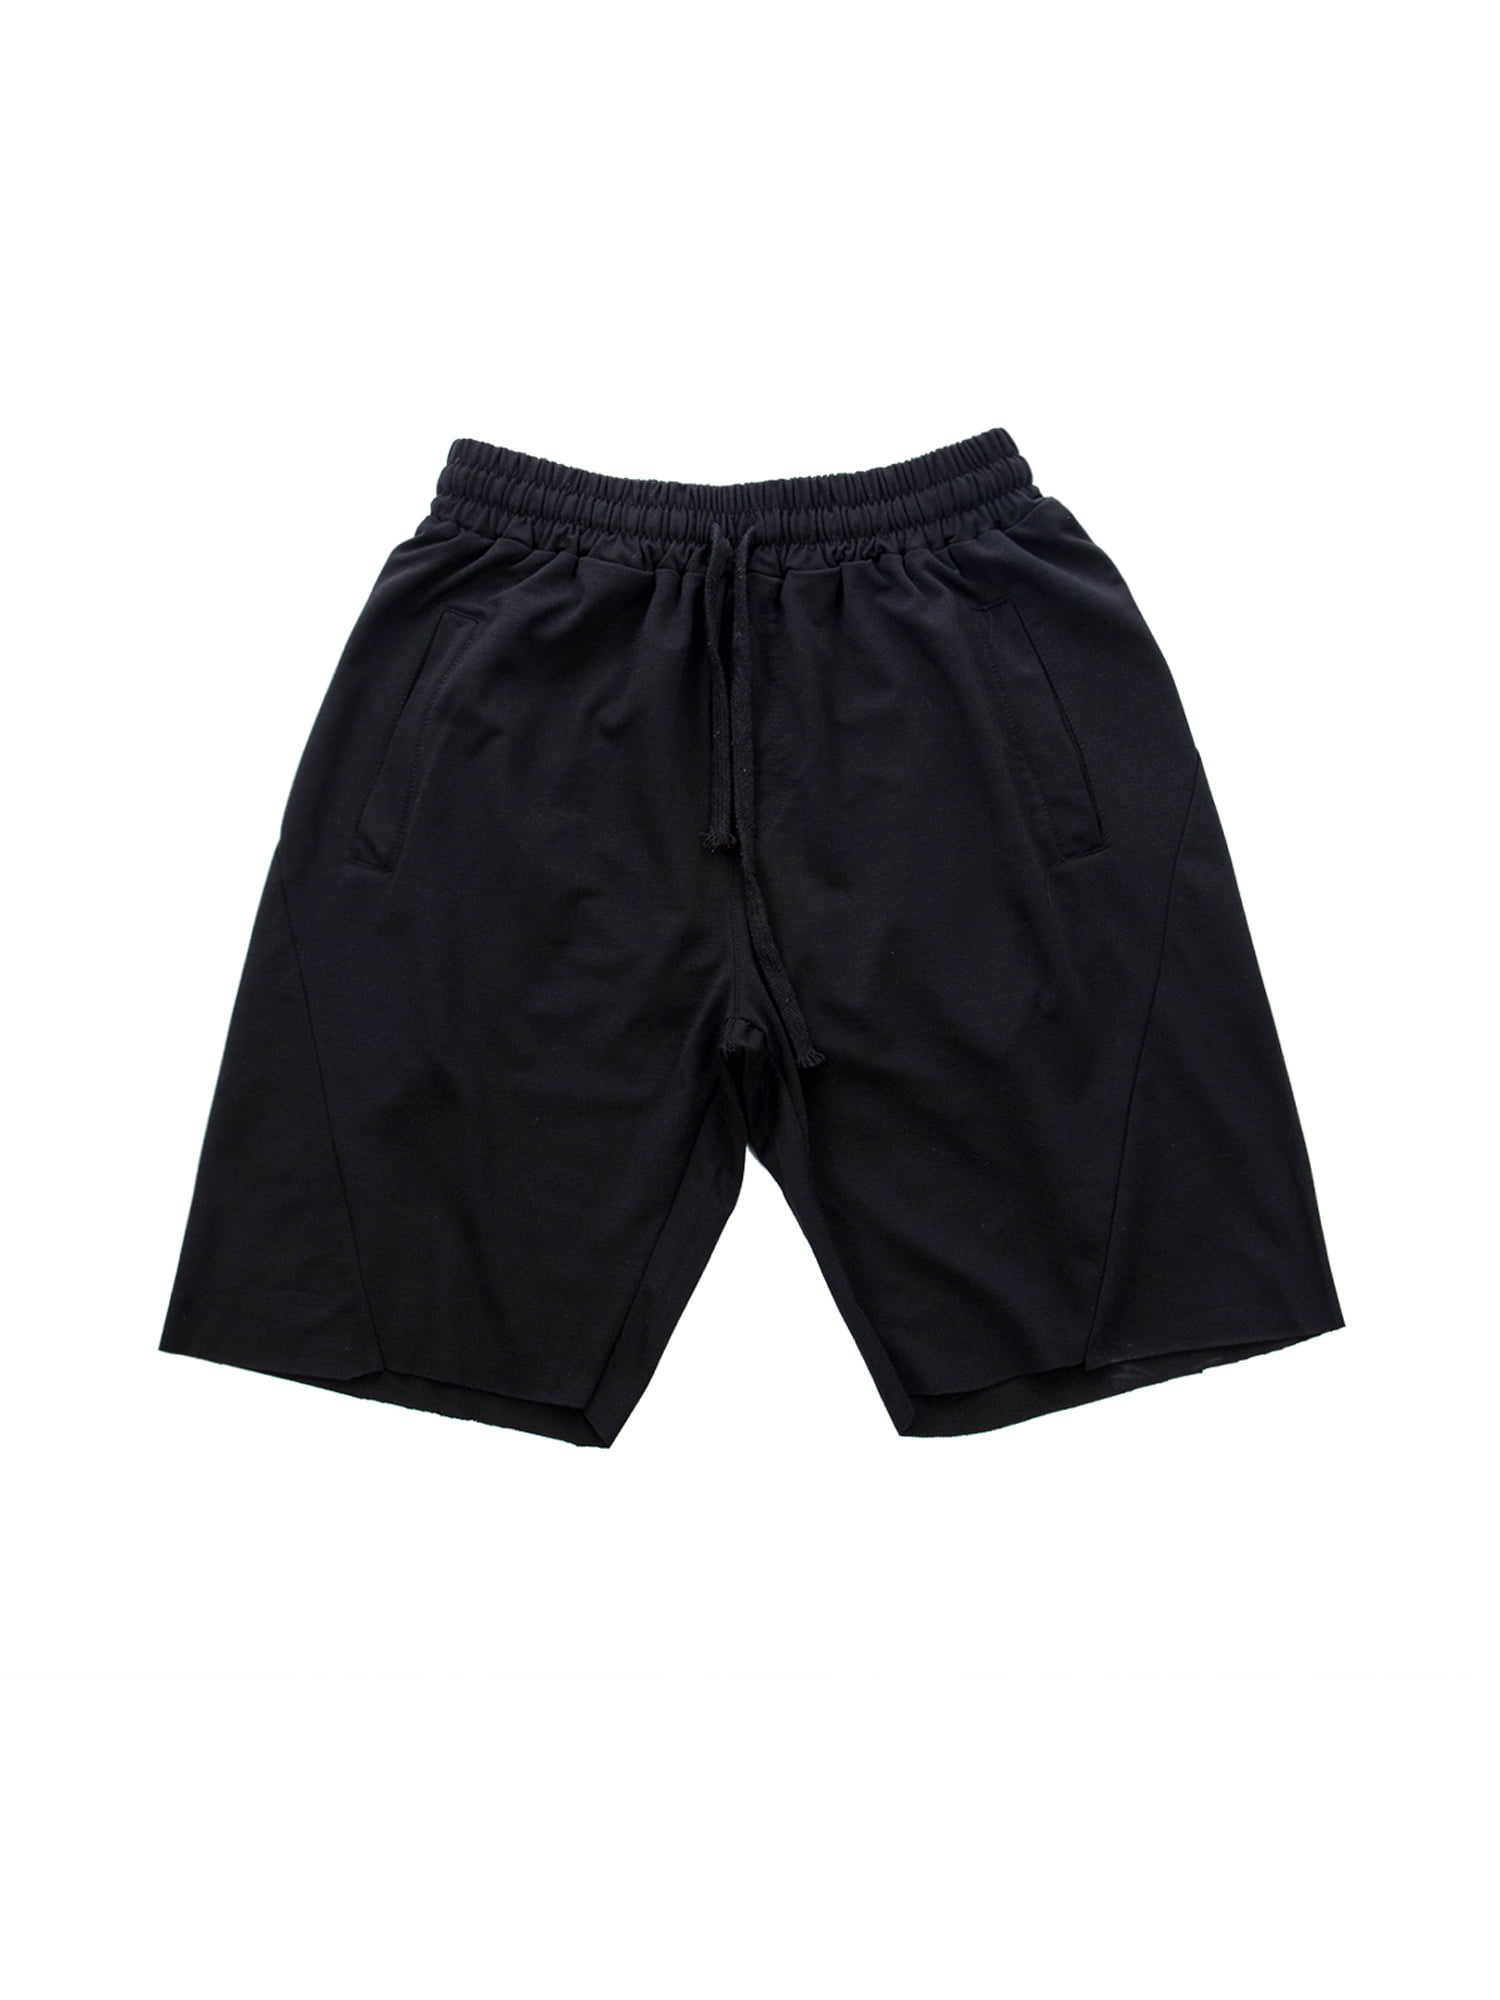 Mens Fashion Summer Solid Casual Pocket Drawstring Short Pants 